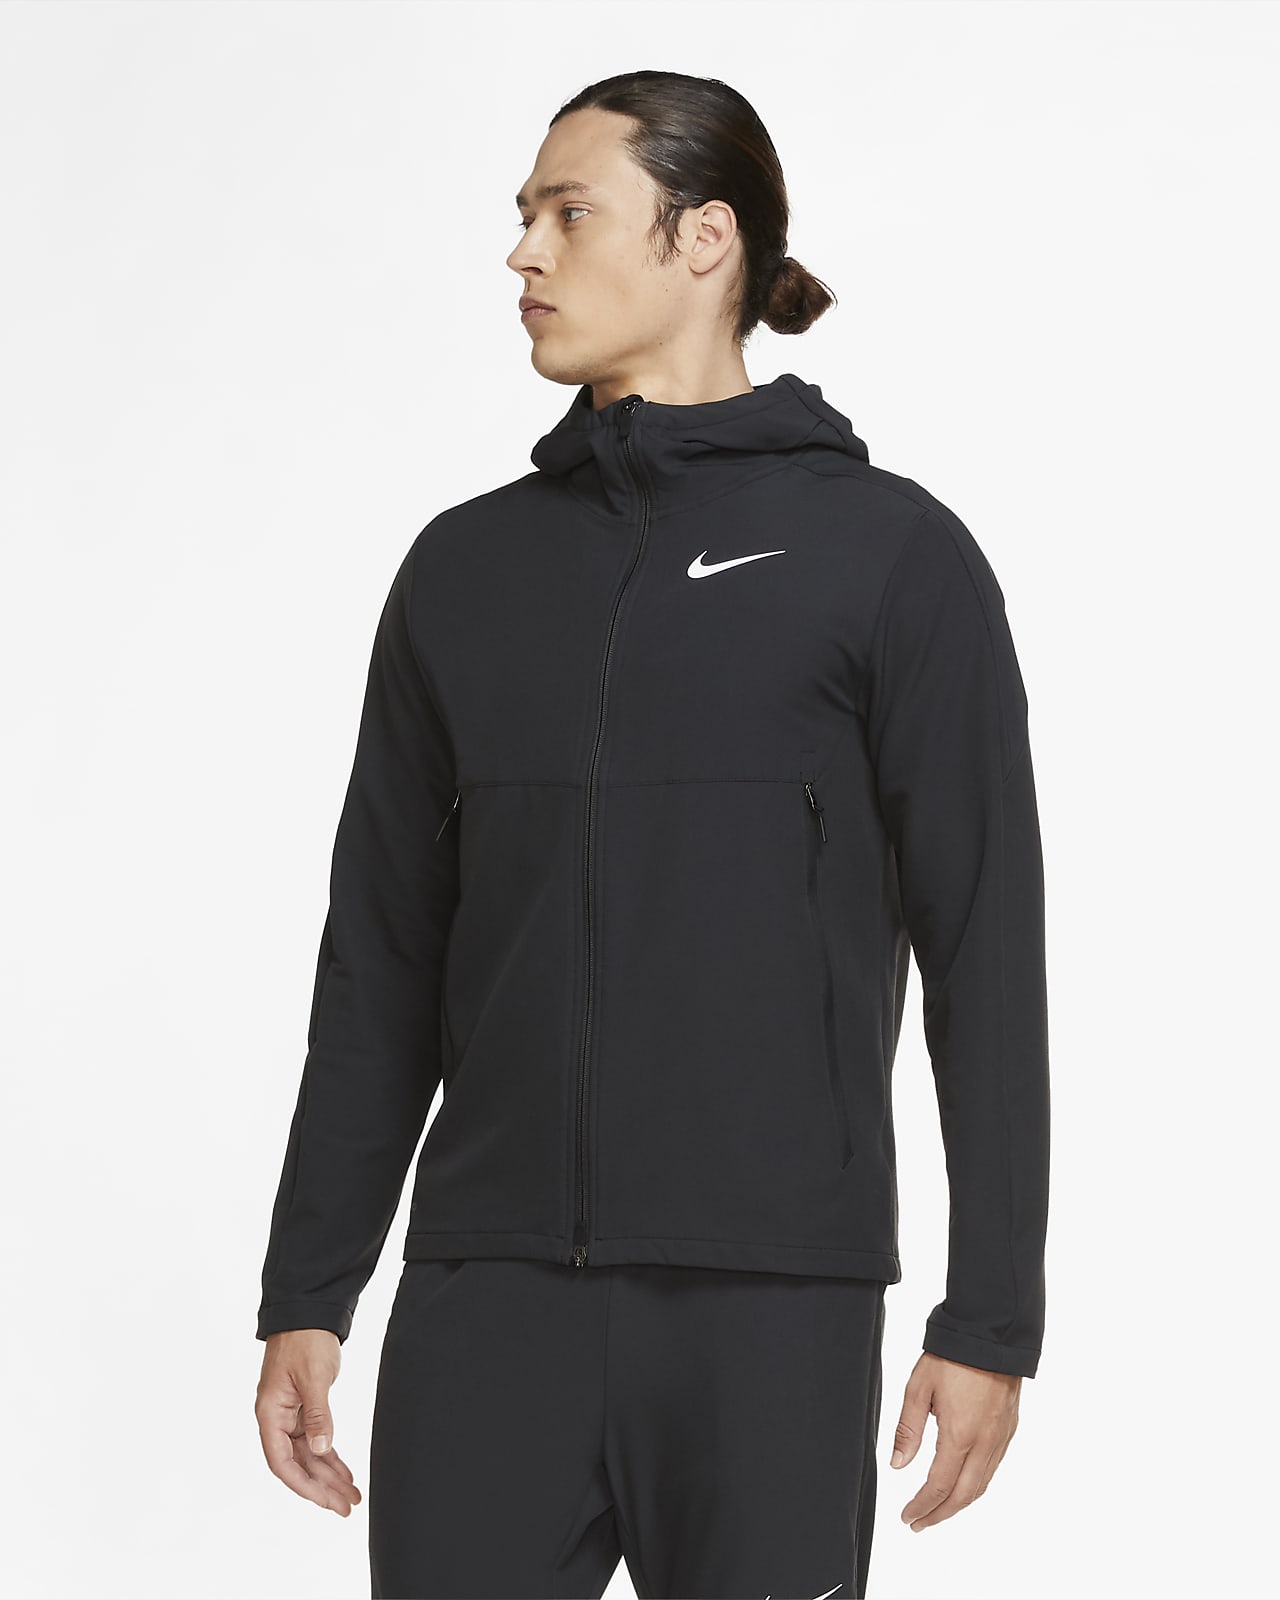 Nike Geweven trainingsjack voor de winter voor heren